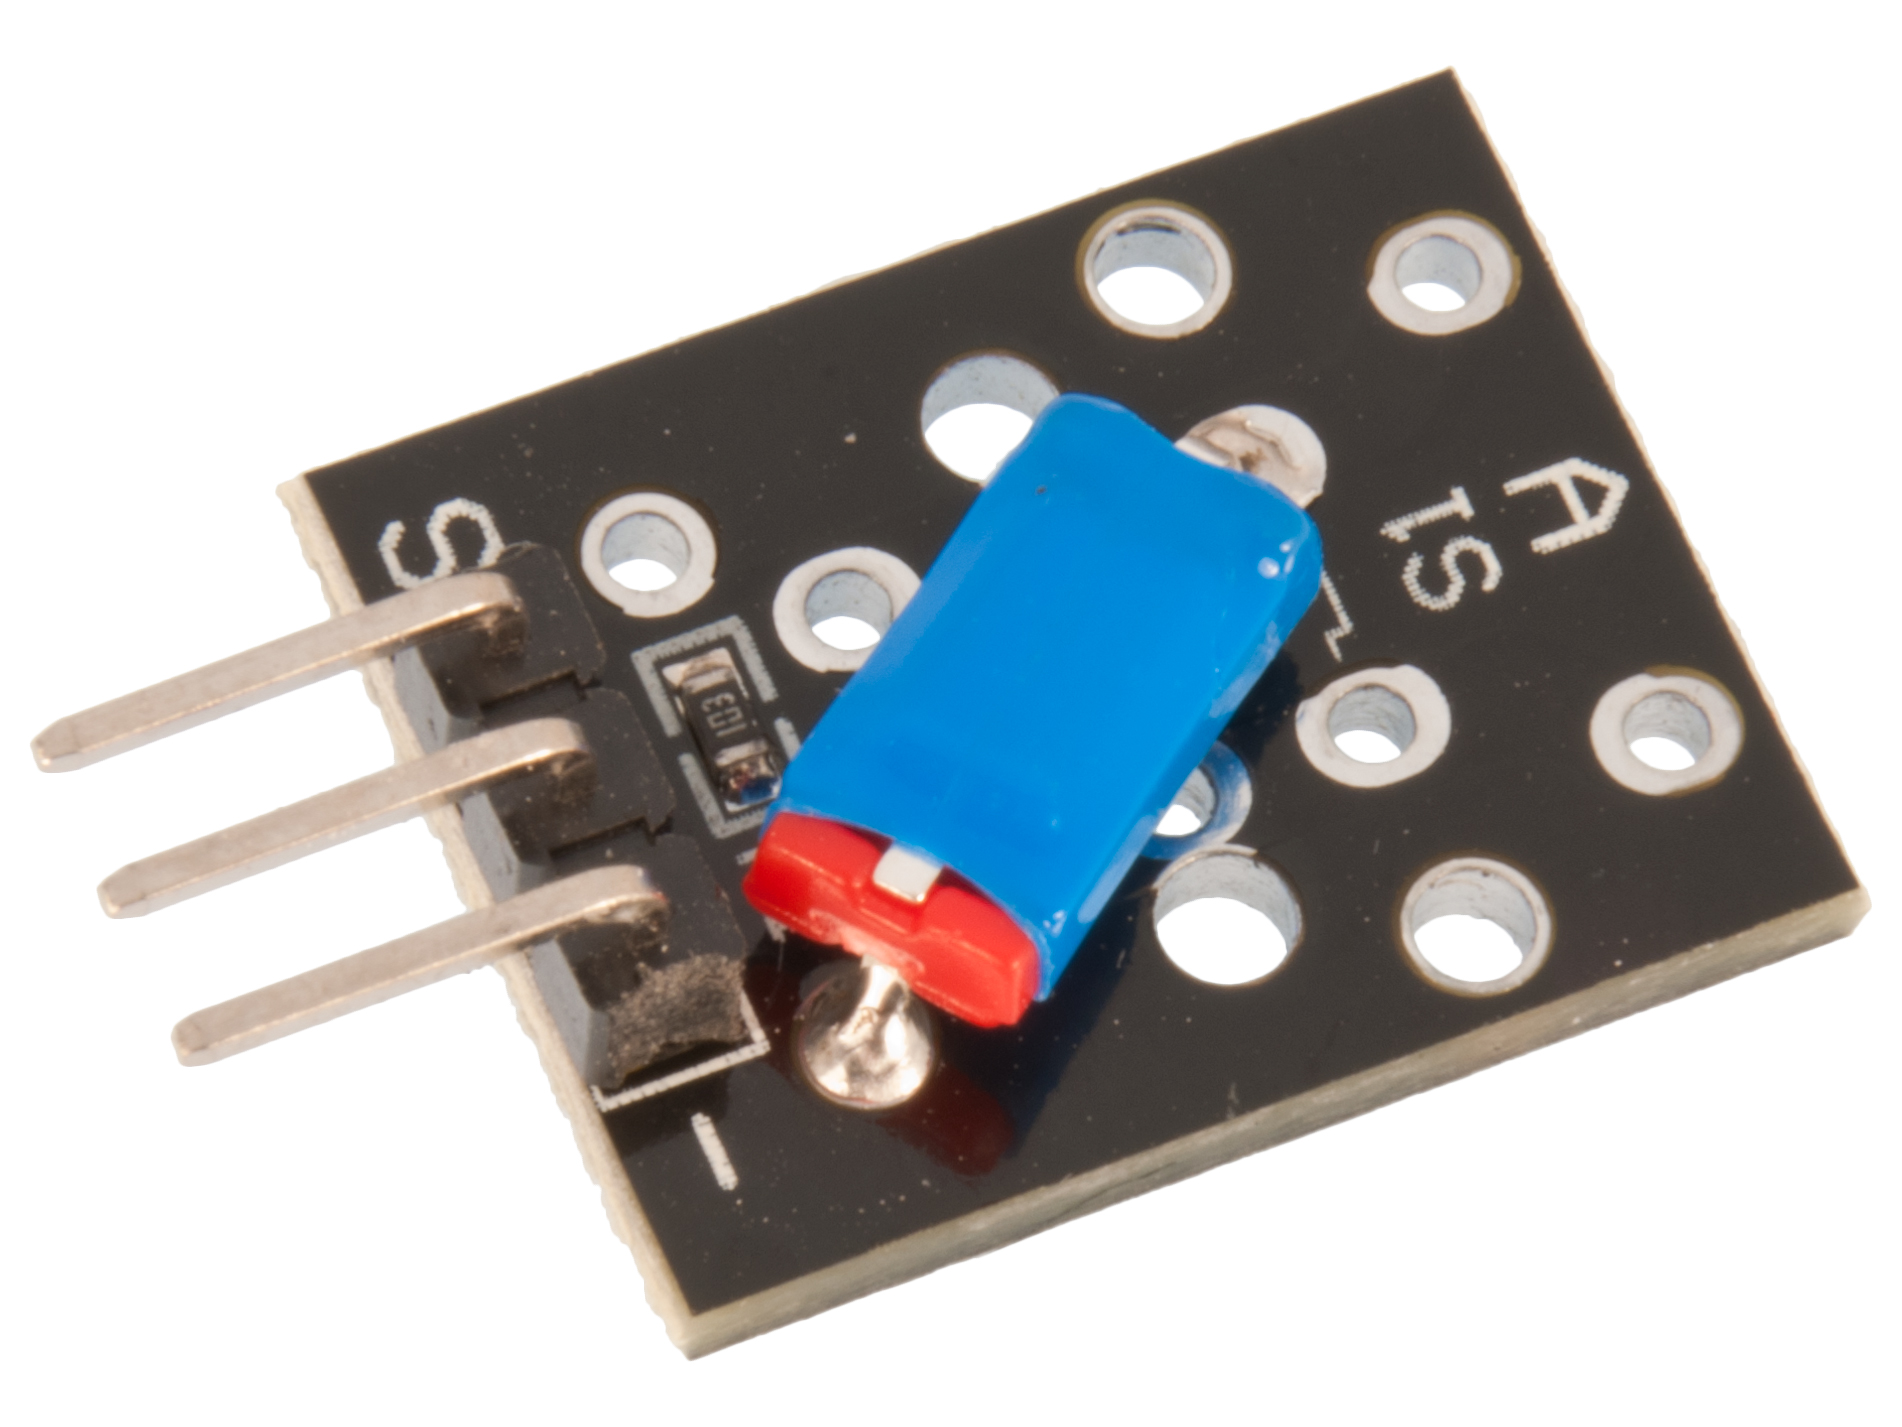 Tilt sensor module @ electrokit